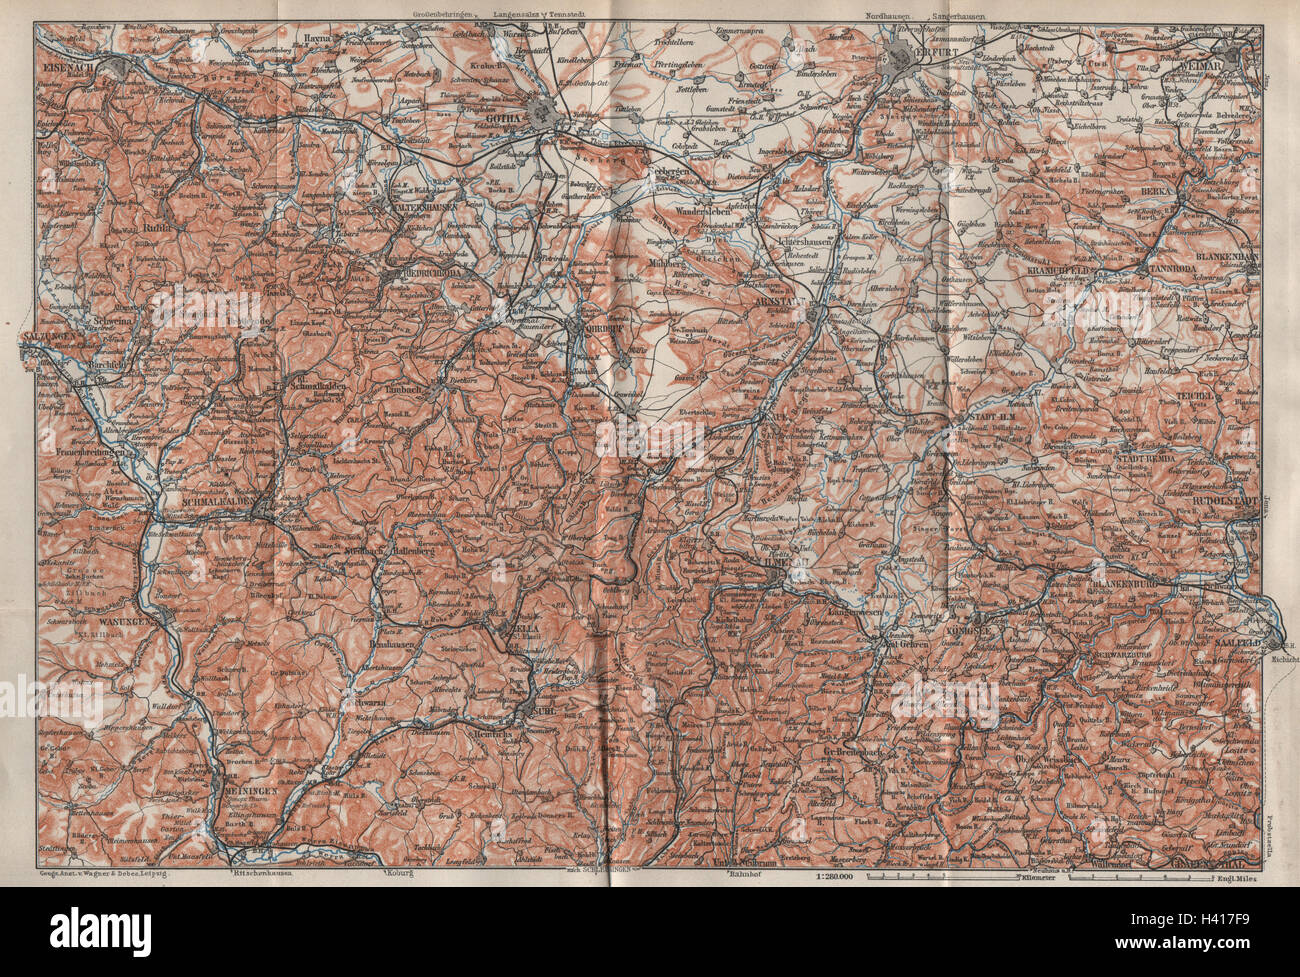 THÜRINGER Wald. Bosque de Turingia. Gotha Eisenach Erfurt Weimar karte 1910 mapa Foto de stock